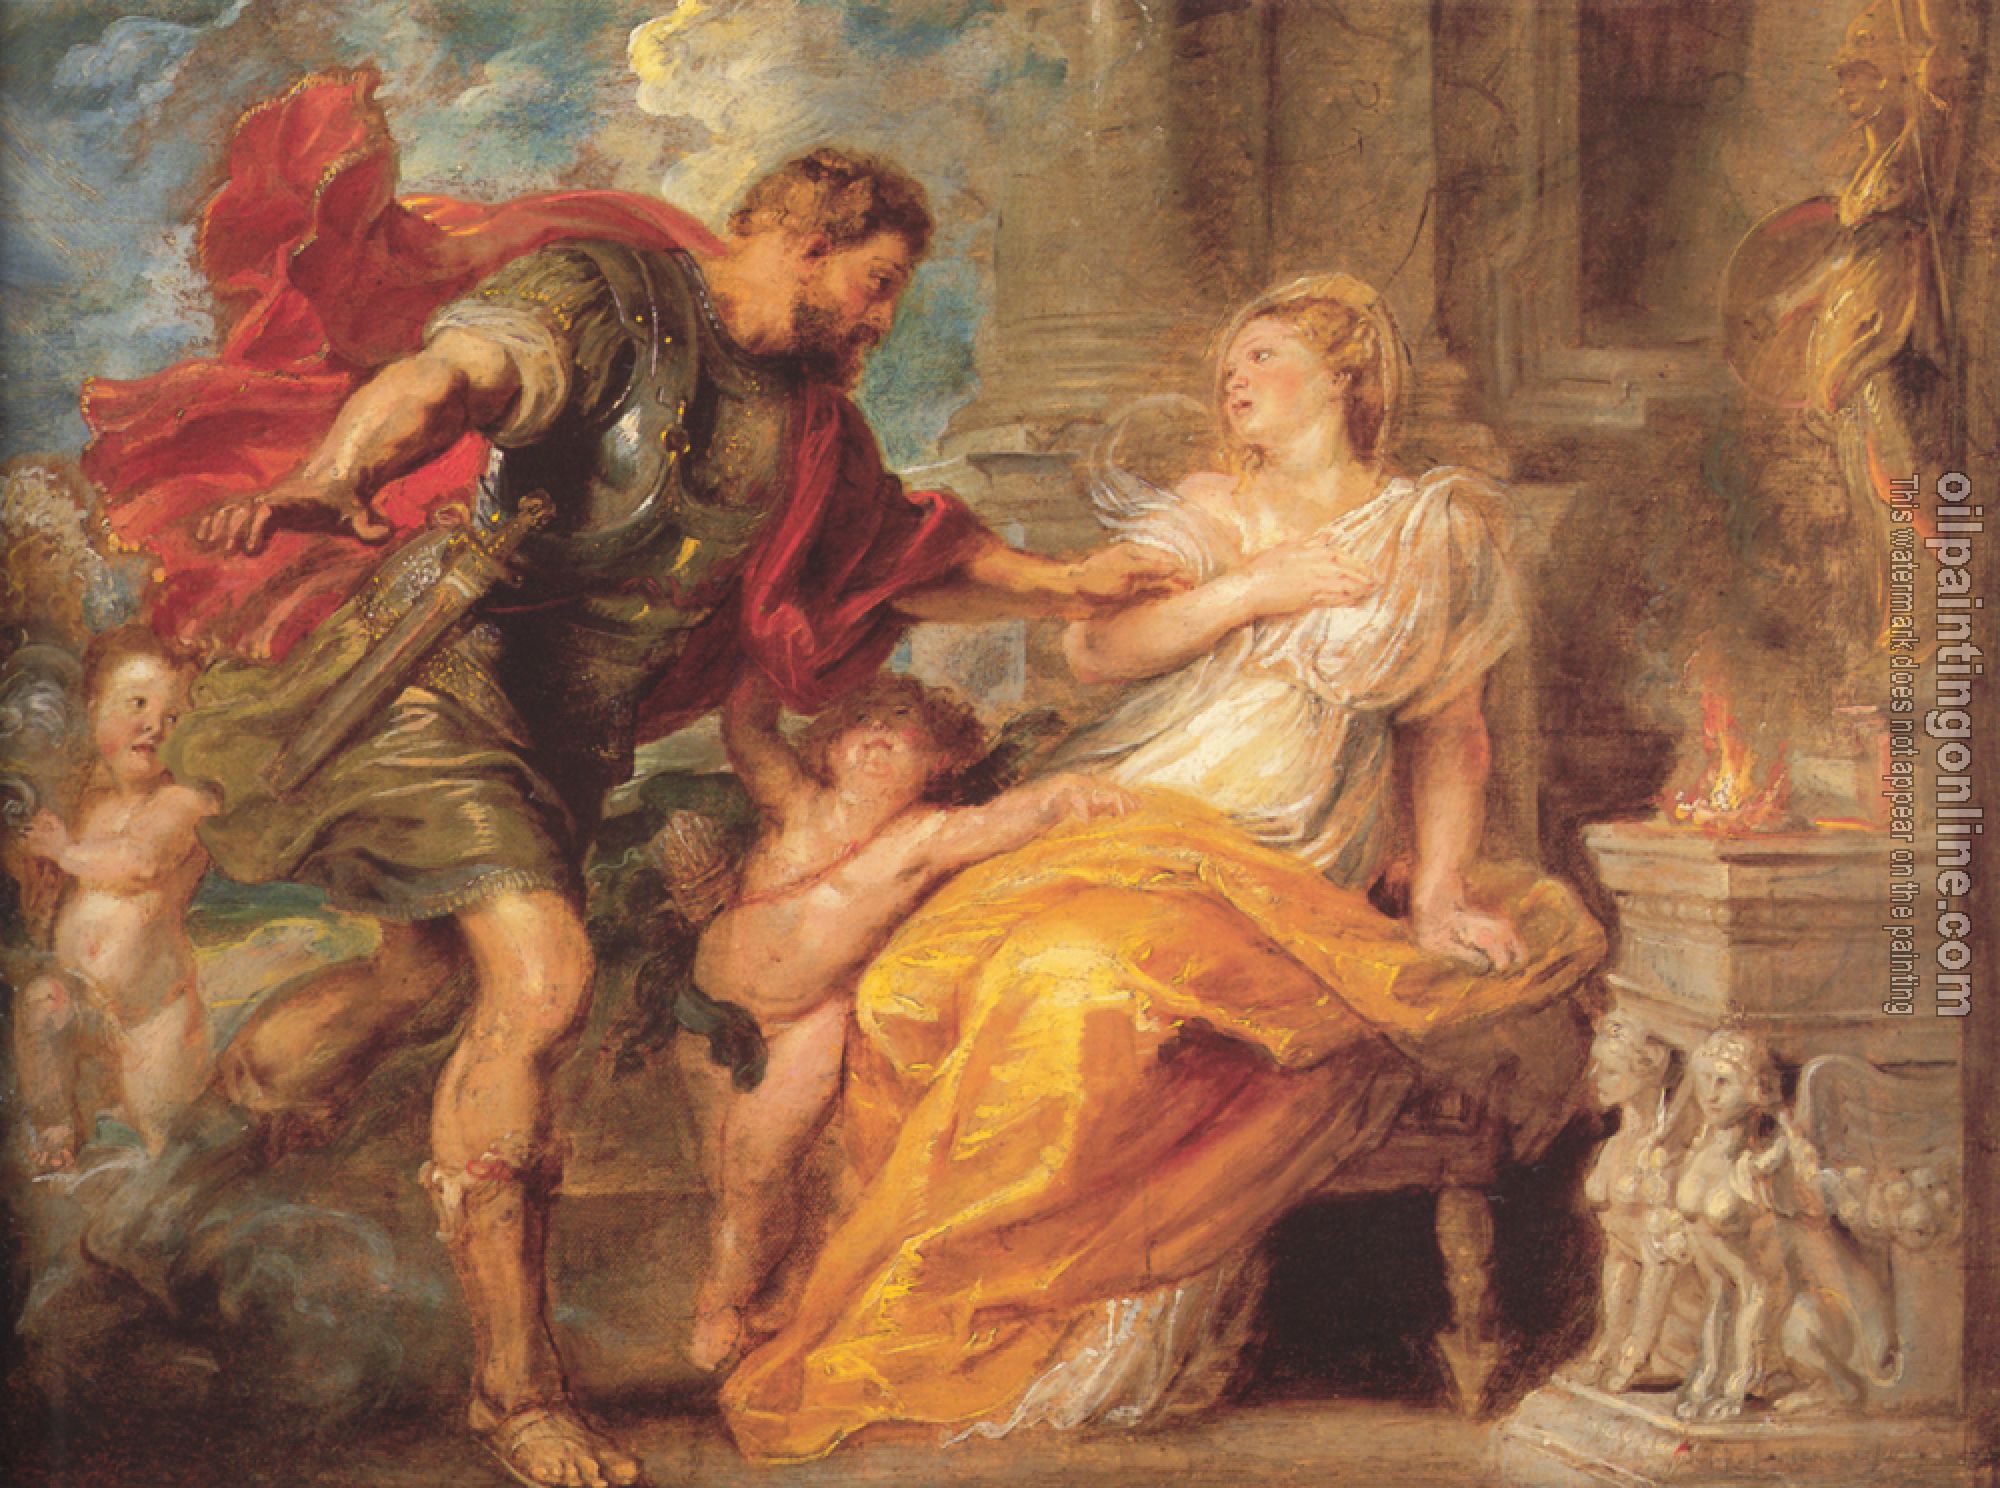 Rubens, Peter Paul - Mars and Rhea Silvia